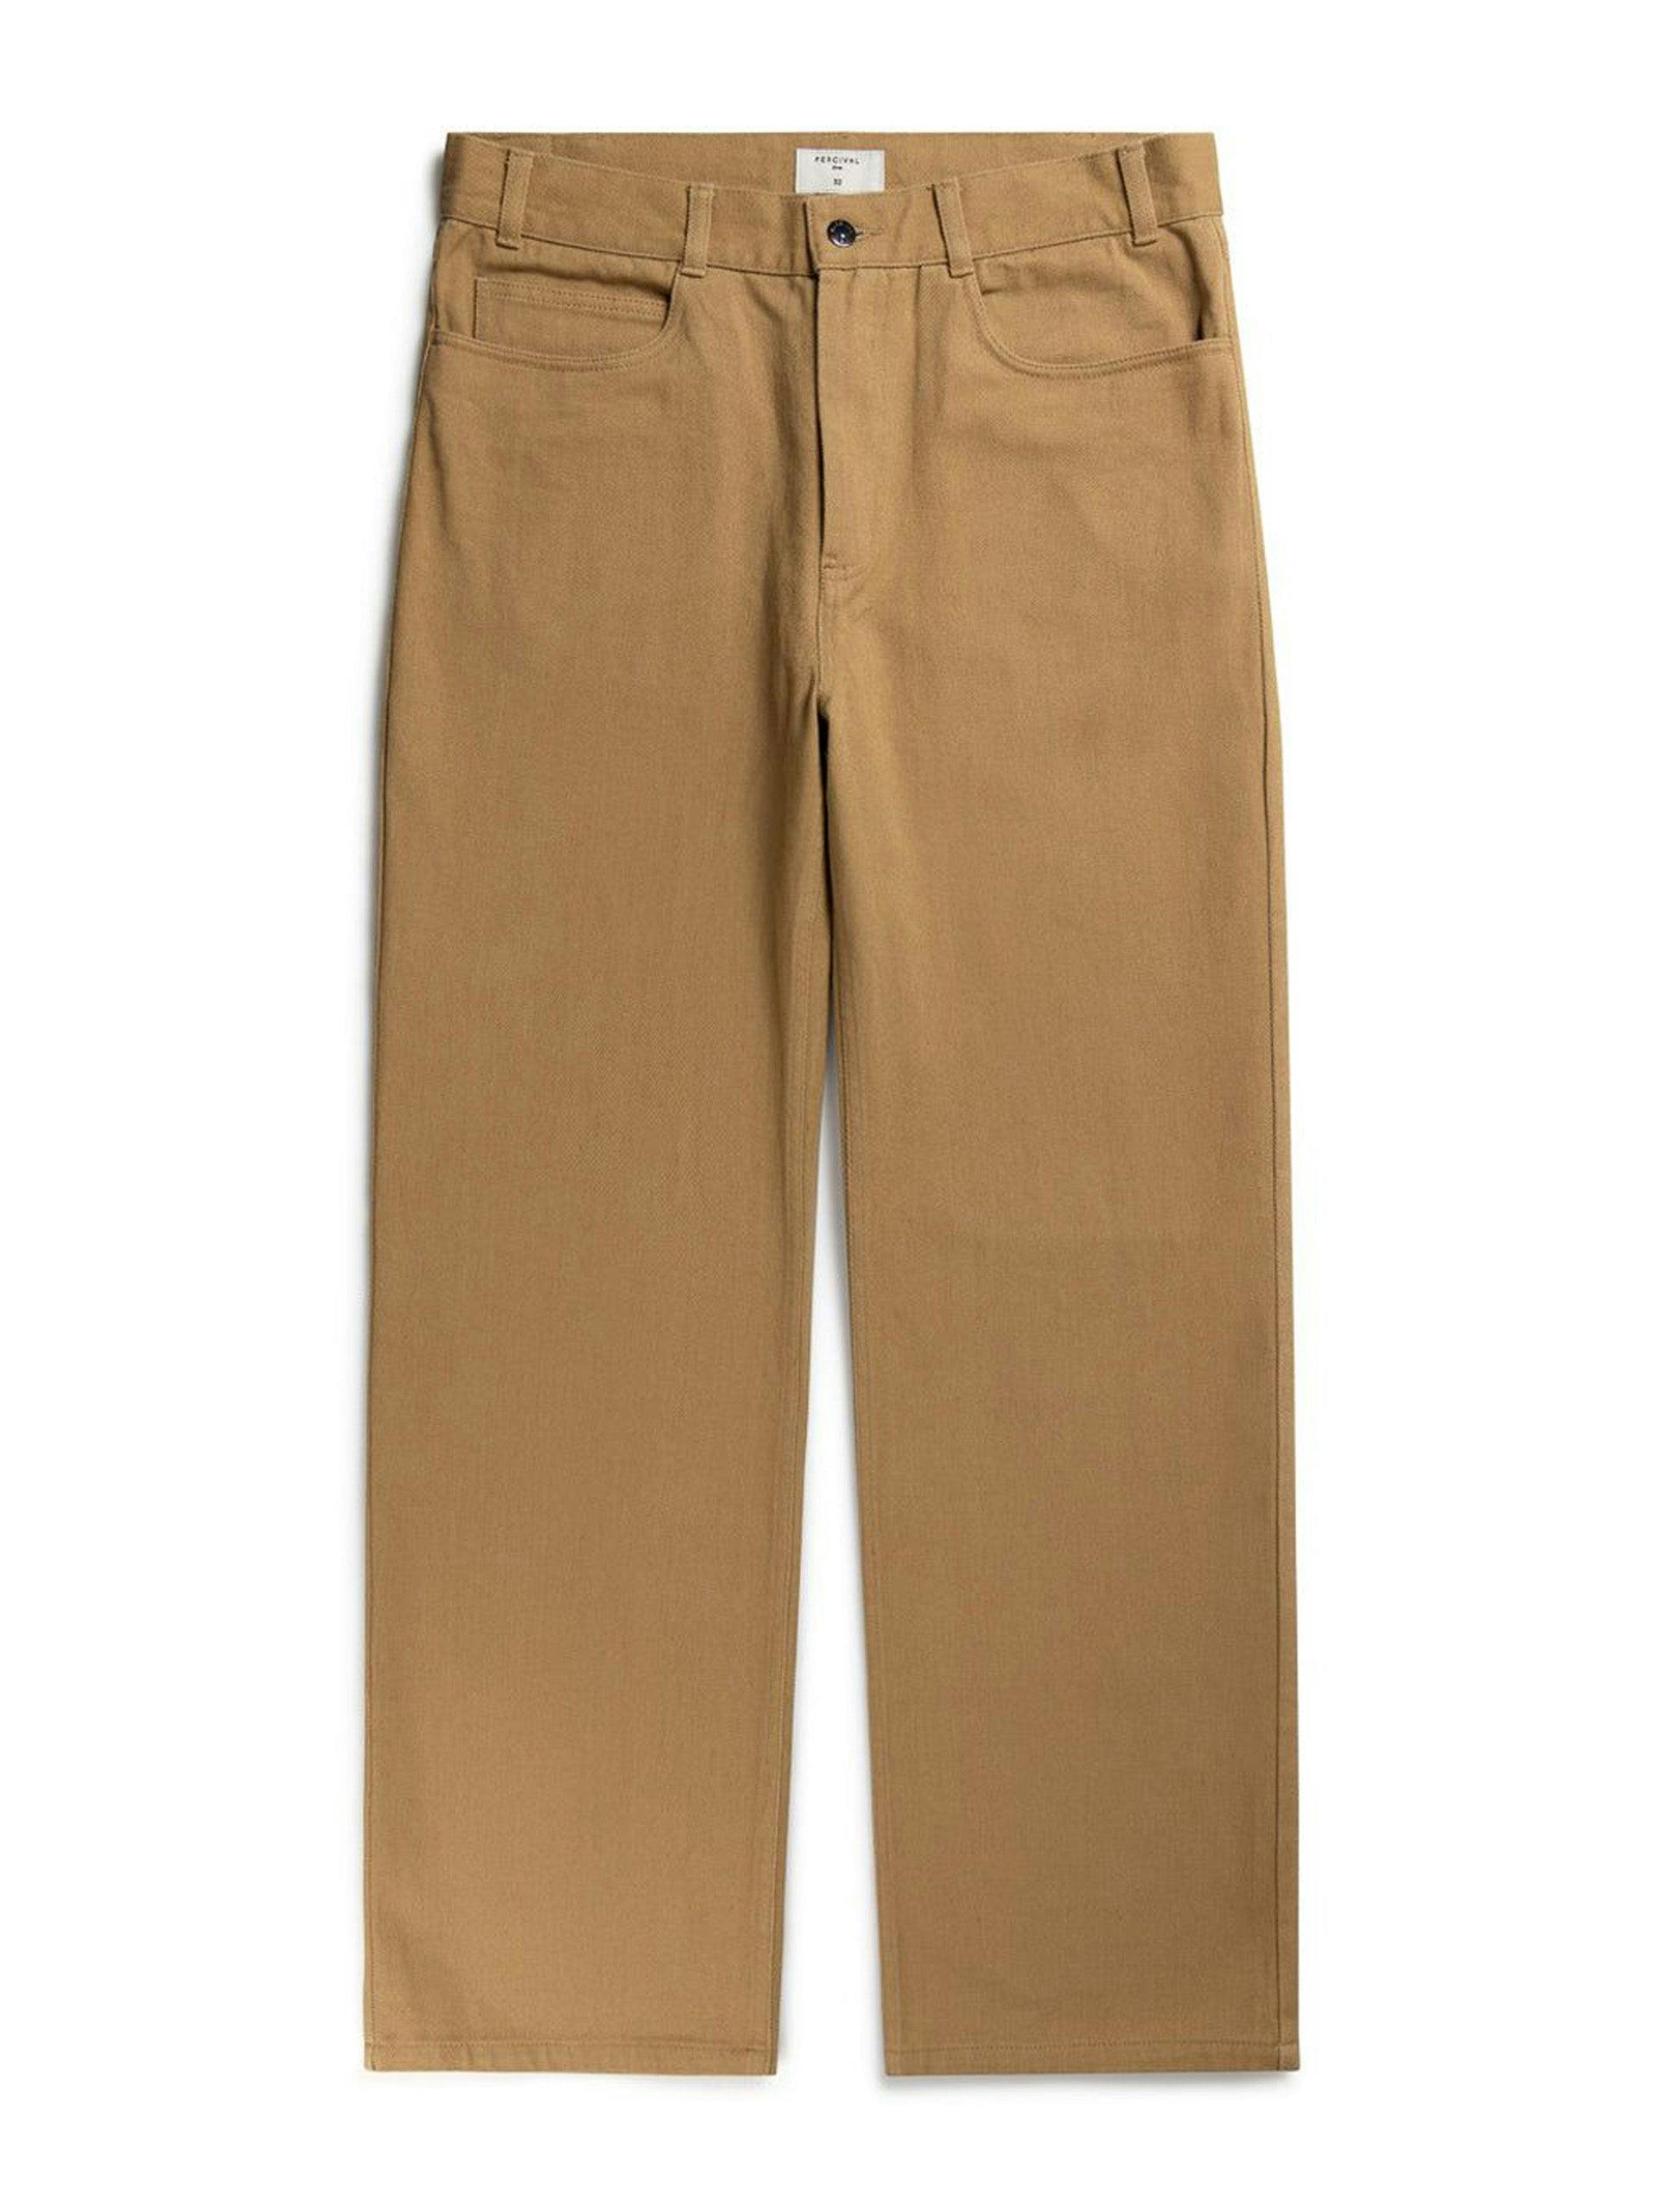 Tan five-pocket twill trousers